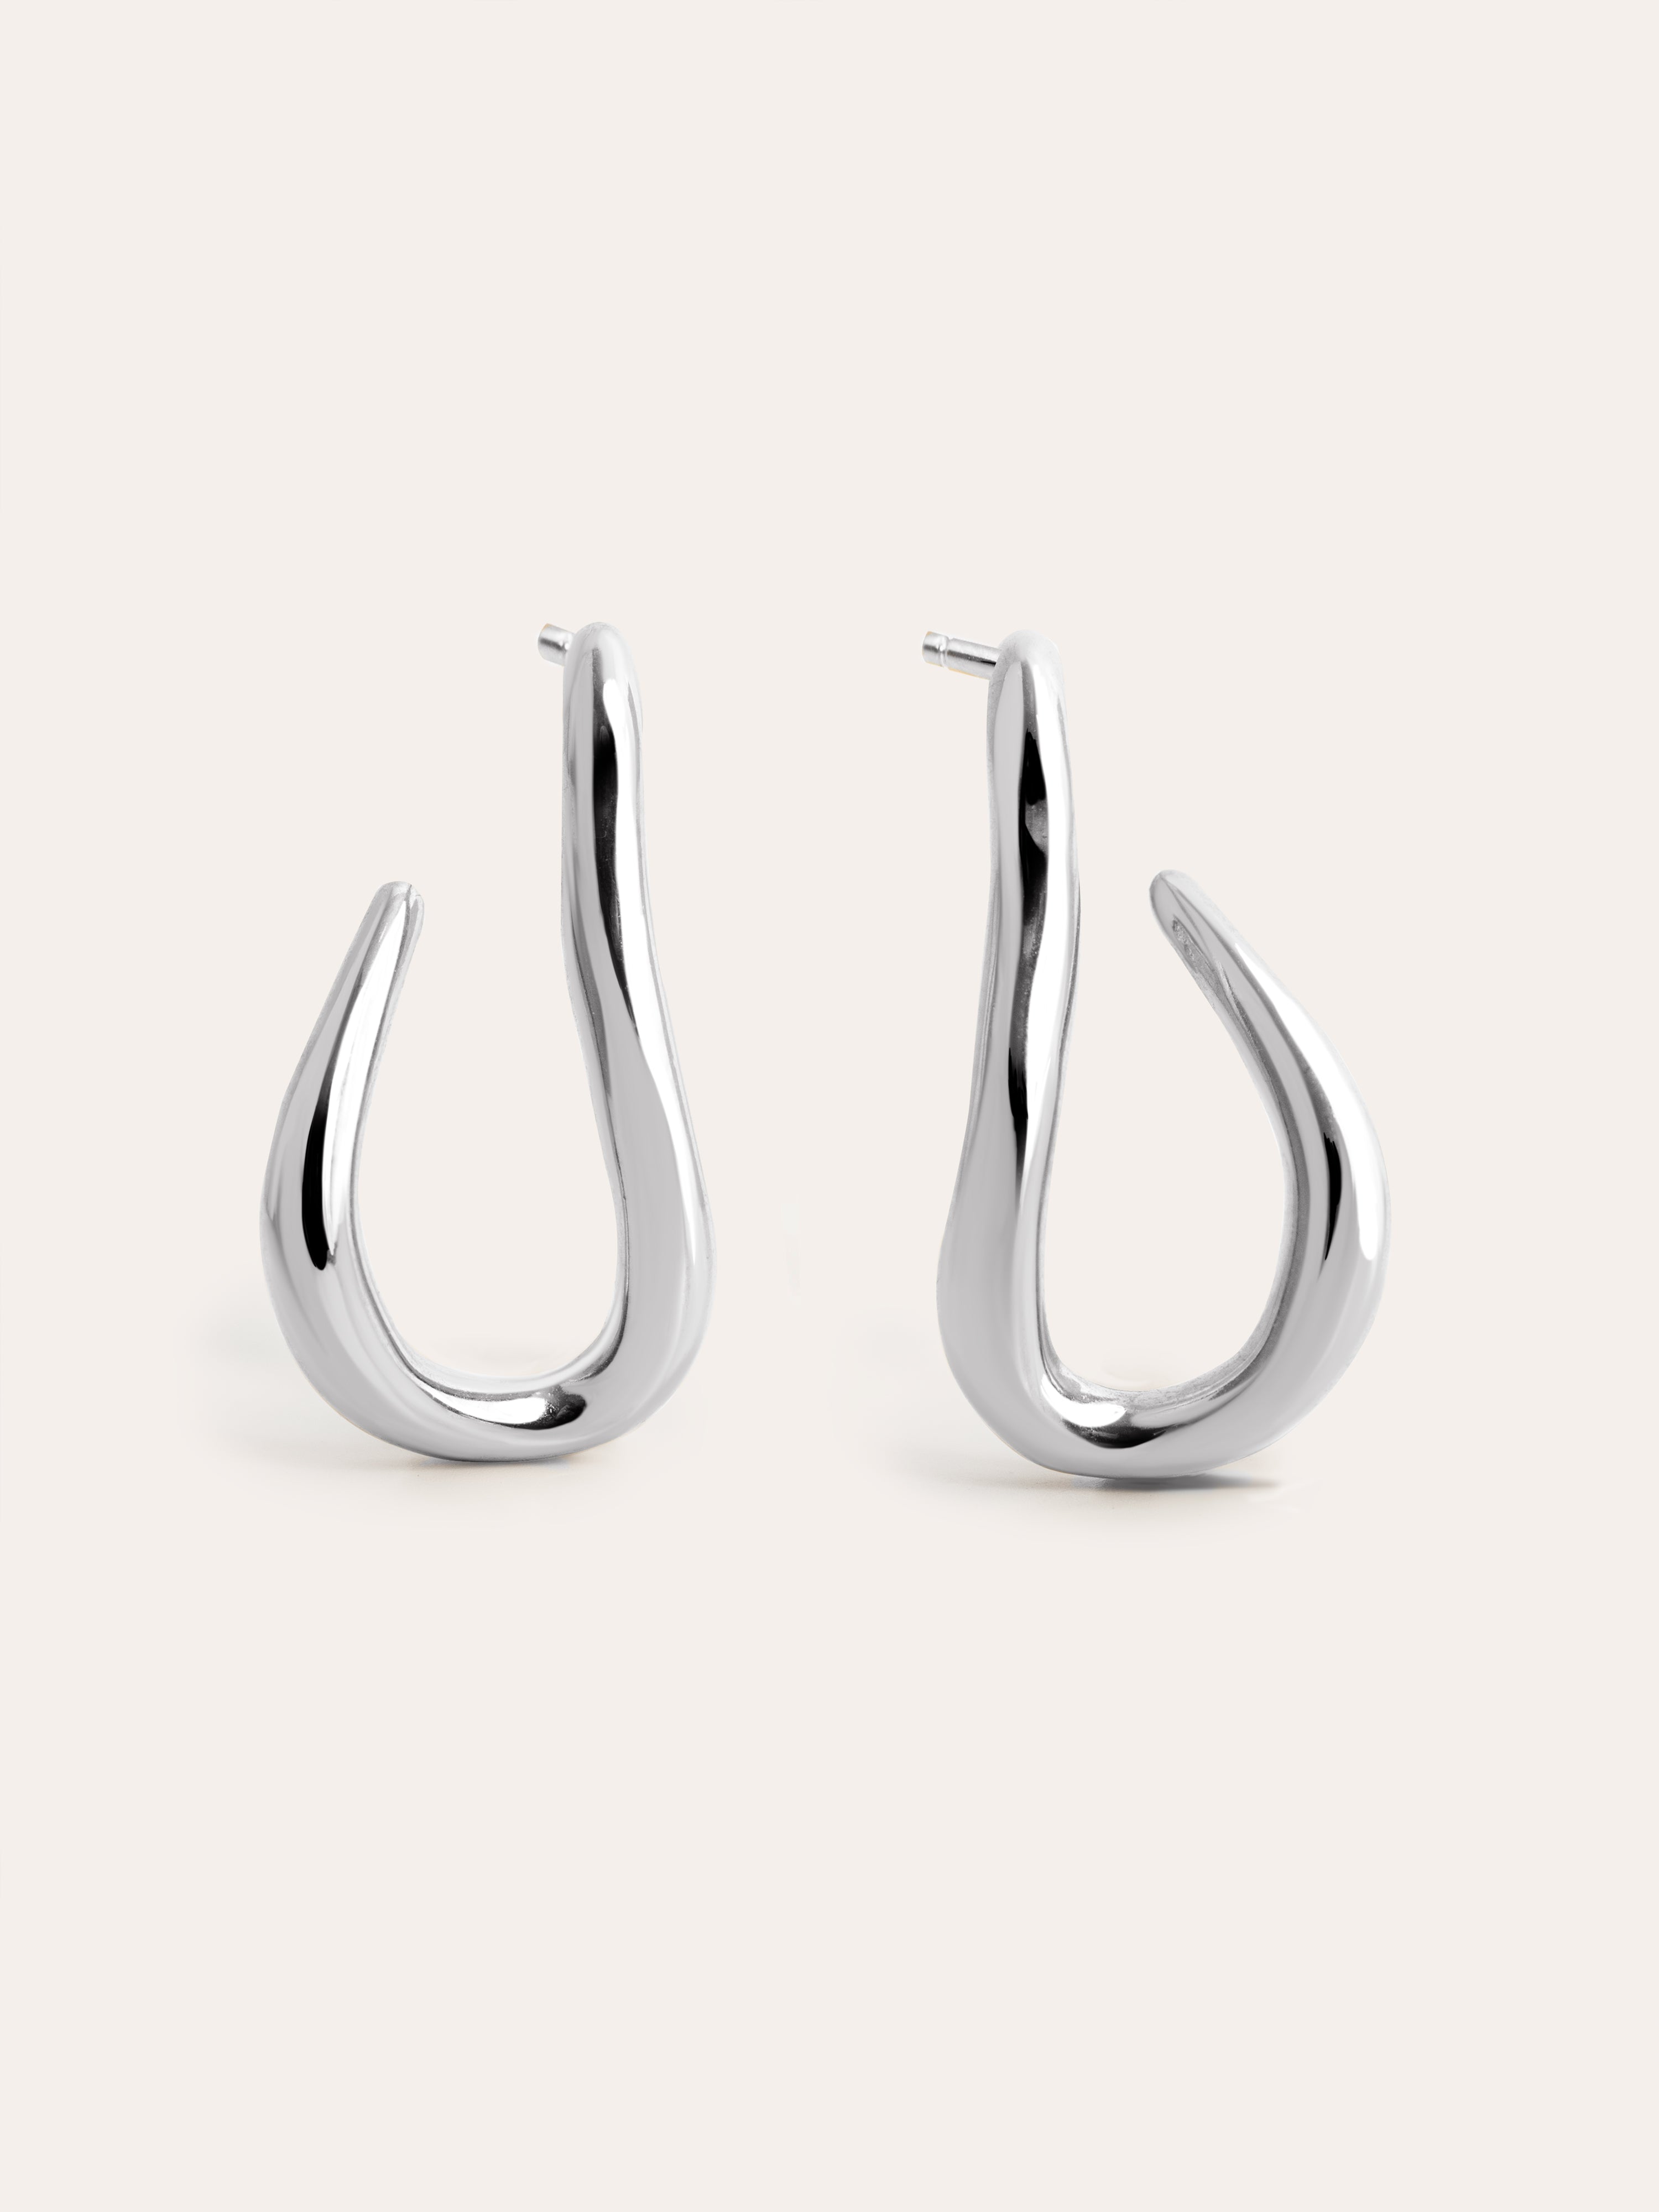 Organic Hook Stainless Steel Hoop Earrings